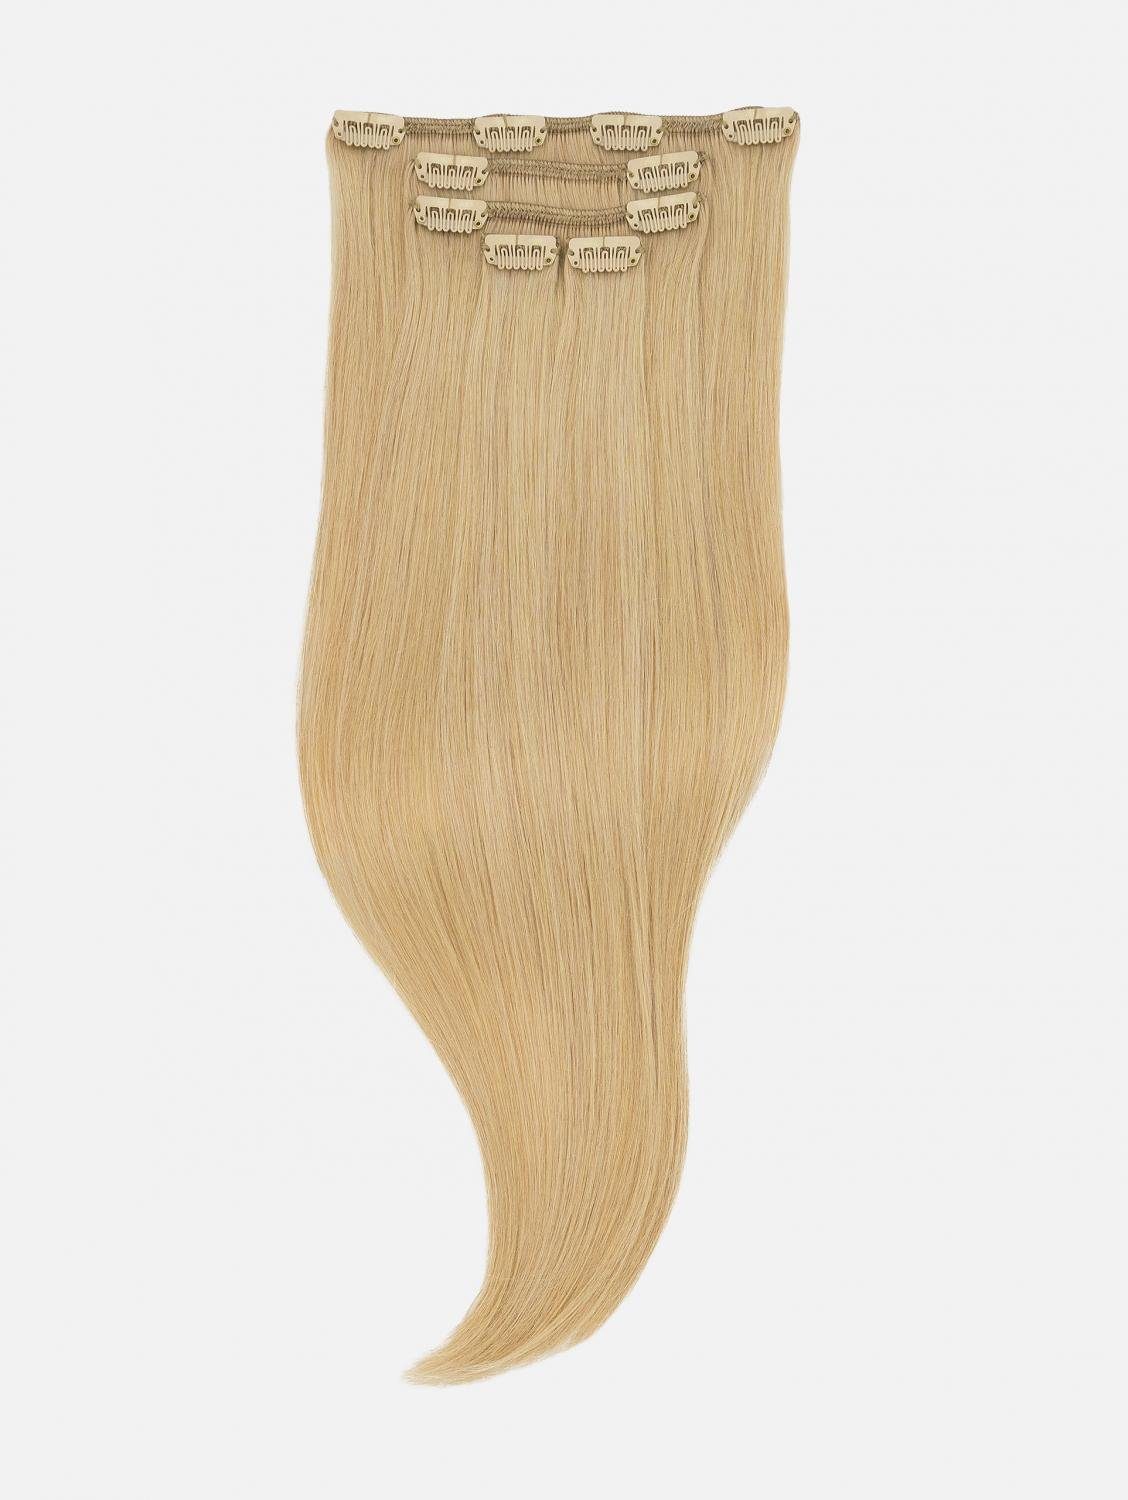 EH - Haarverlängerung Echthaar-Extension Clip-In Extensions NATURAL Seidenglatt Echthaar - 5-teilig 40cm, 50cm, Echthaar #22 (Sahara Blonde)